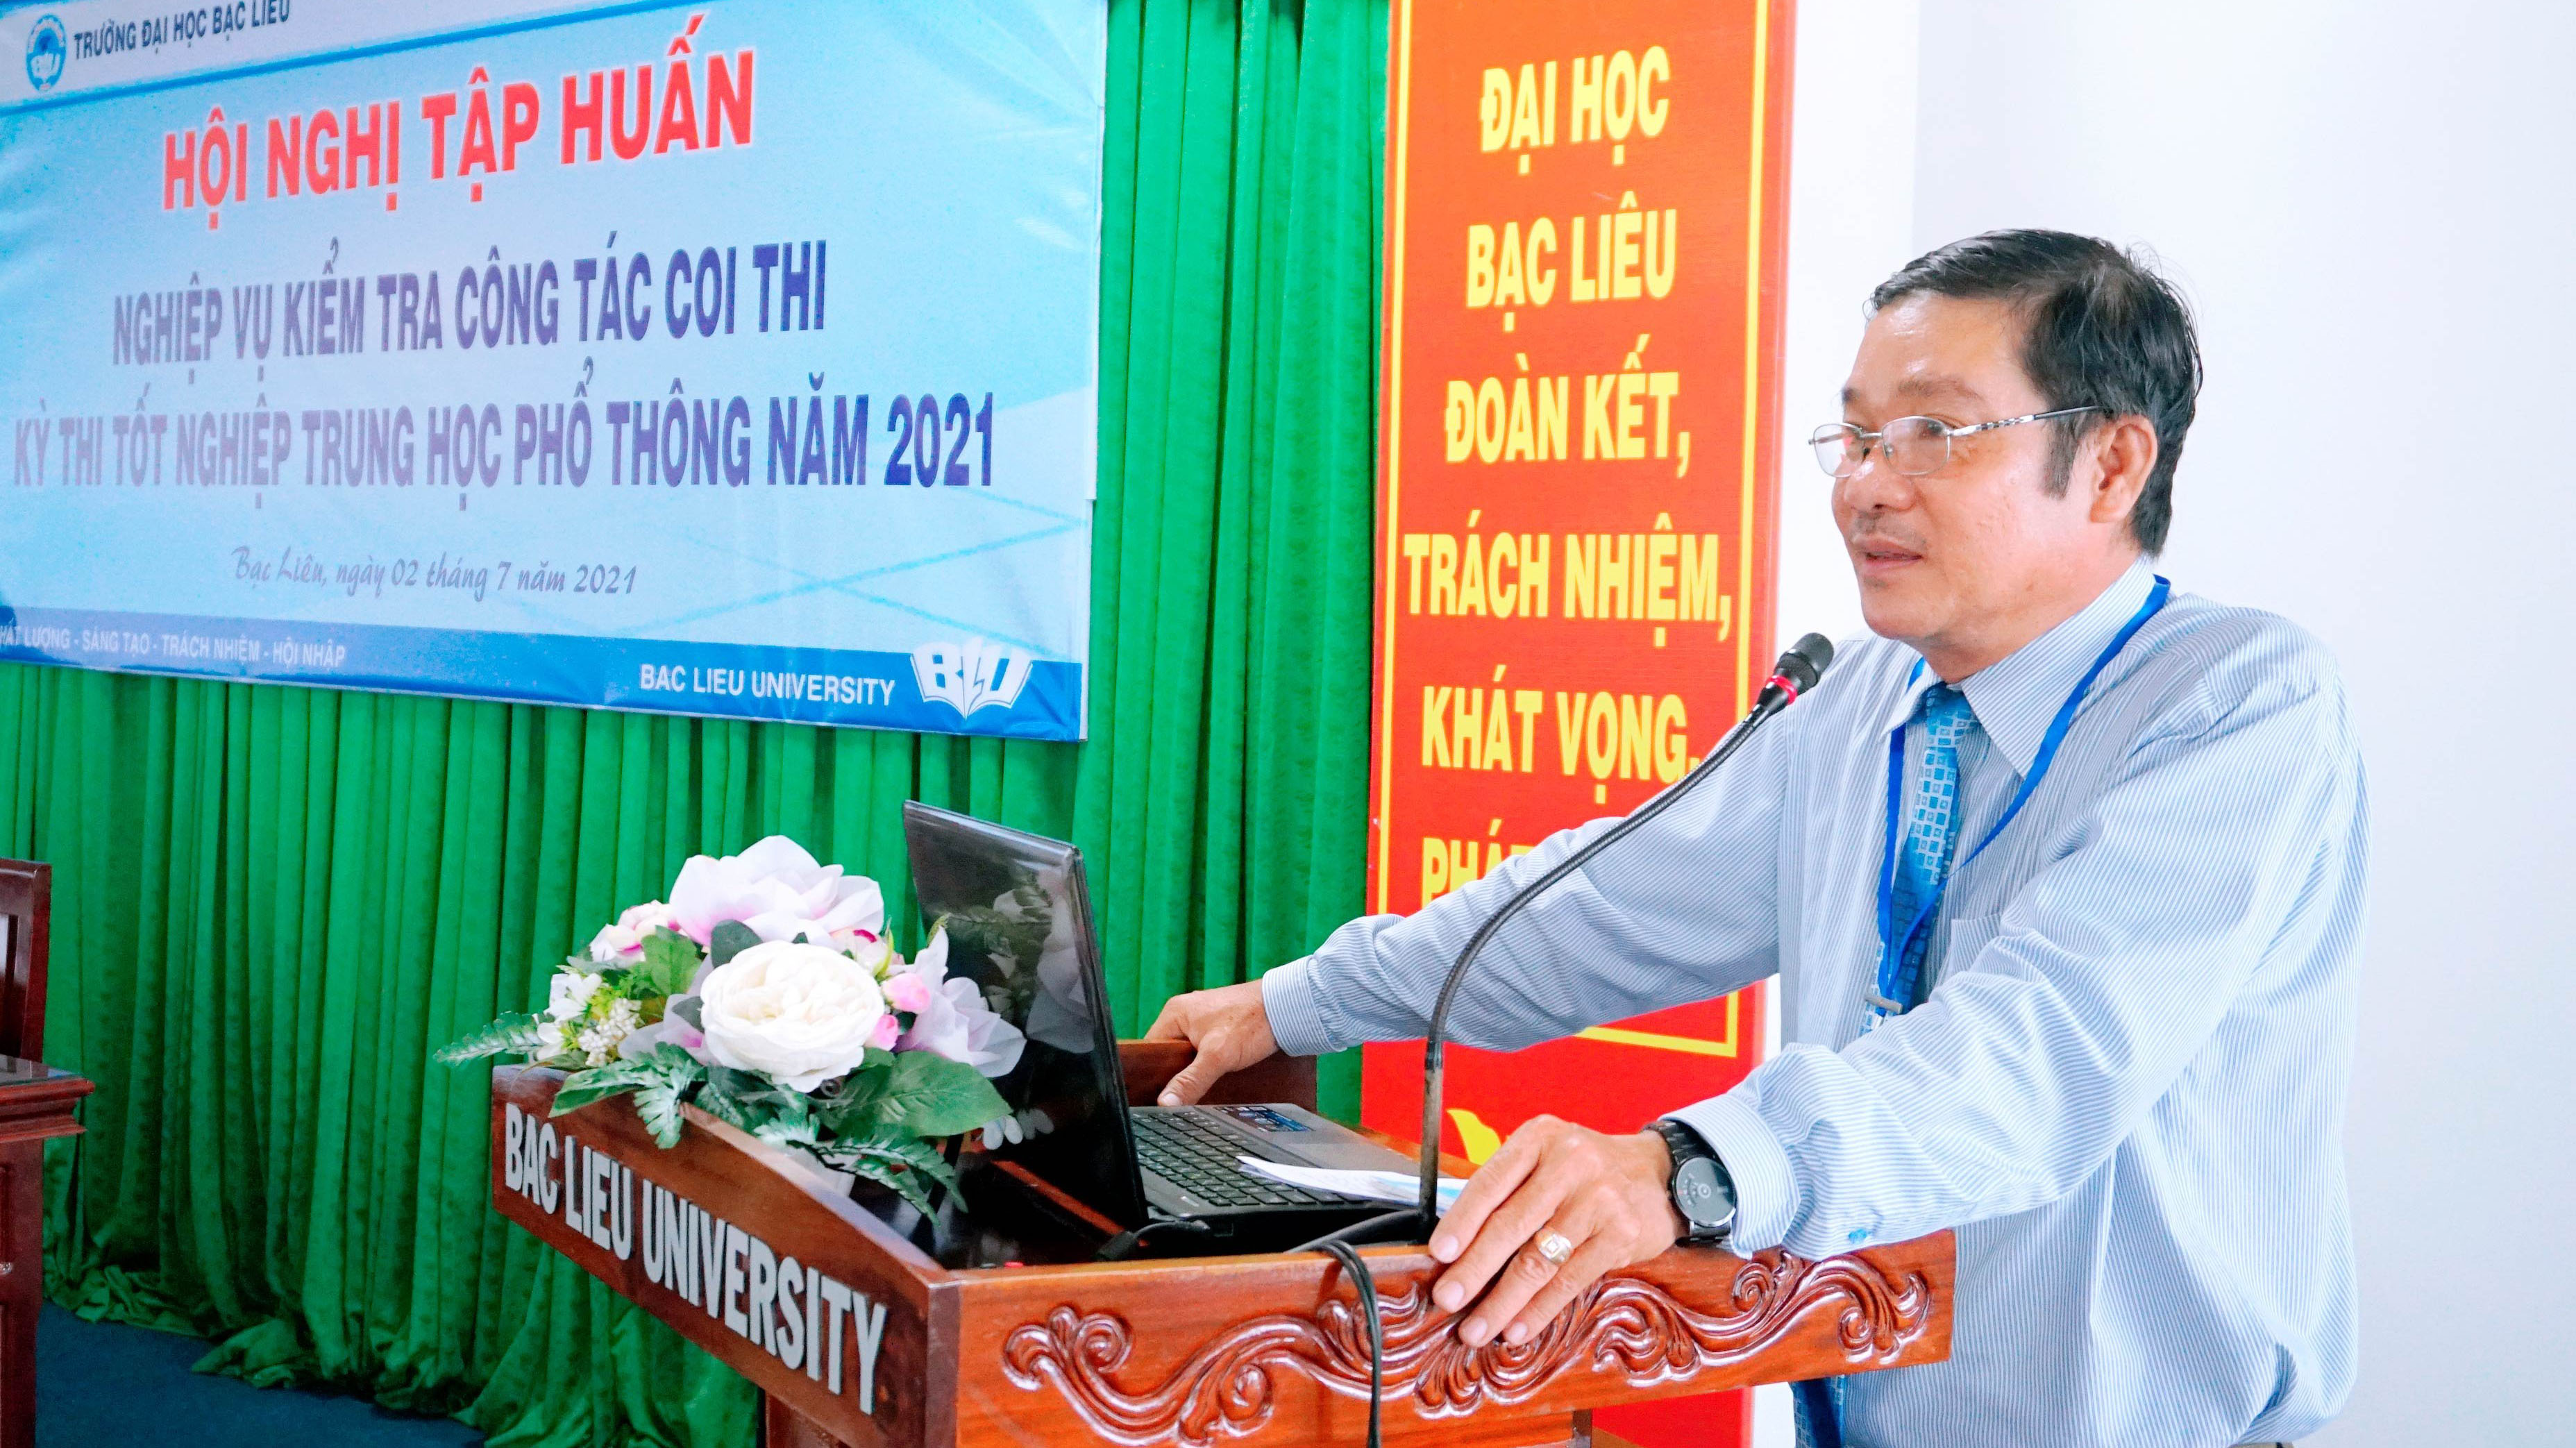 Trường Đại học Bạc Liêu tổ chức Hội nghị tập huấn nghiệp vụ kiểm tra công tác coi thi Kỳ thi tốt nghiệp THPT năm 2021